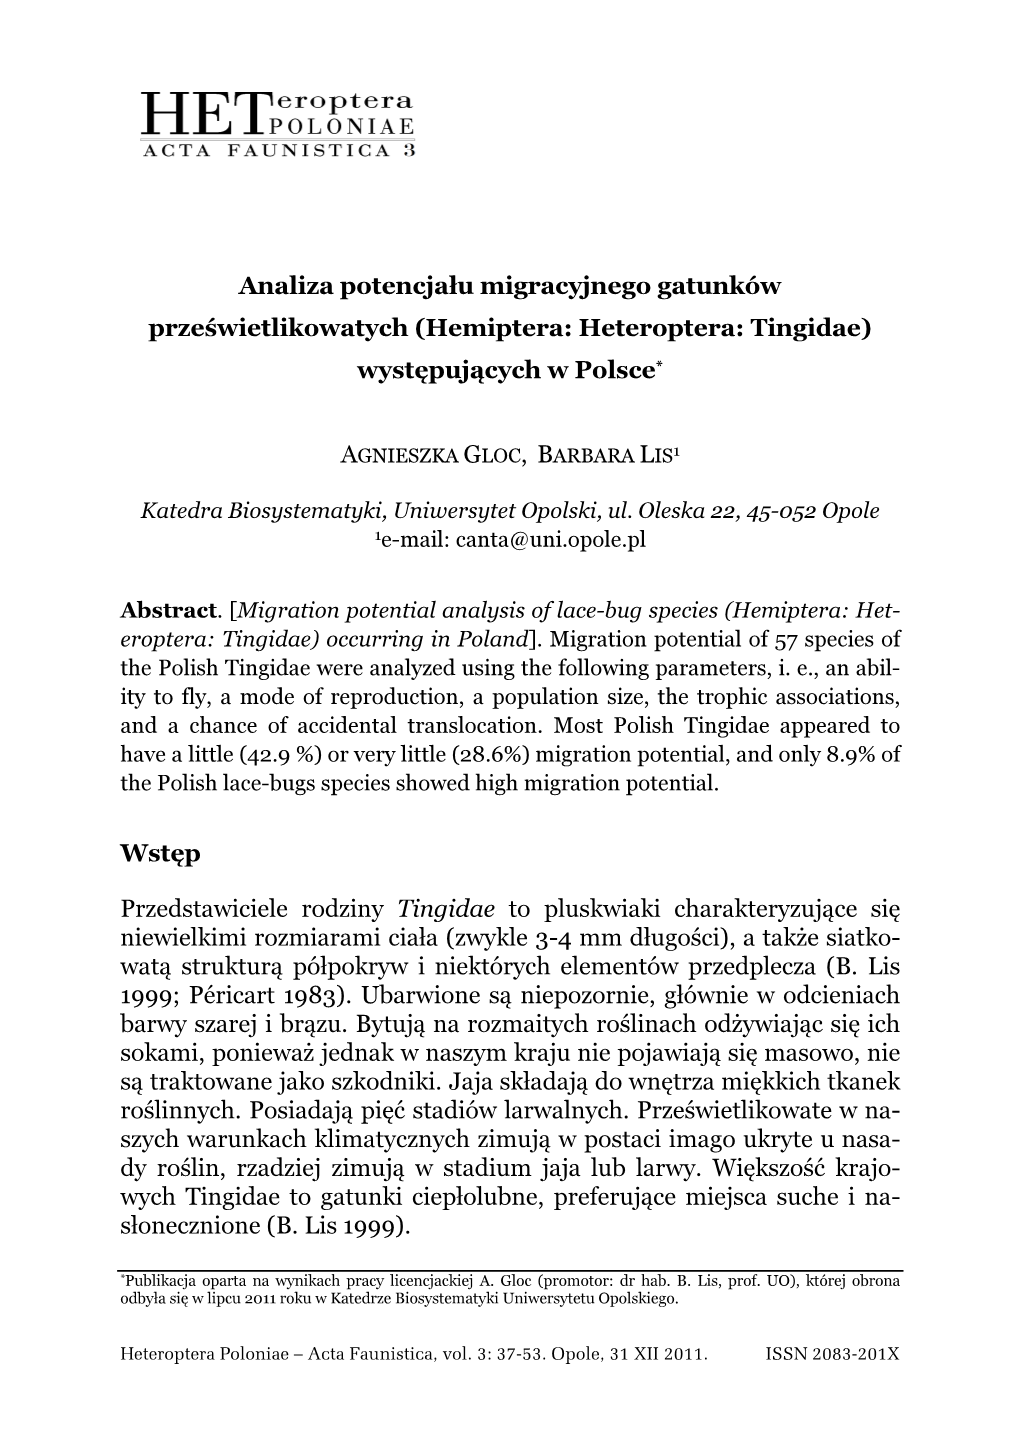 Analiza Potencjału Migracyjnego Gatunków Prześwietlikowatych (Hemiptera: Heteroptera: Tingidae) Występujących W Polsce *